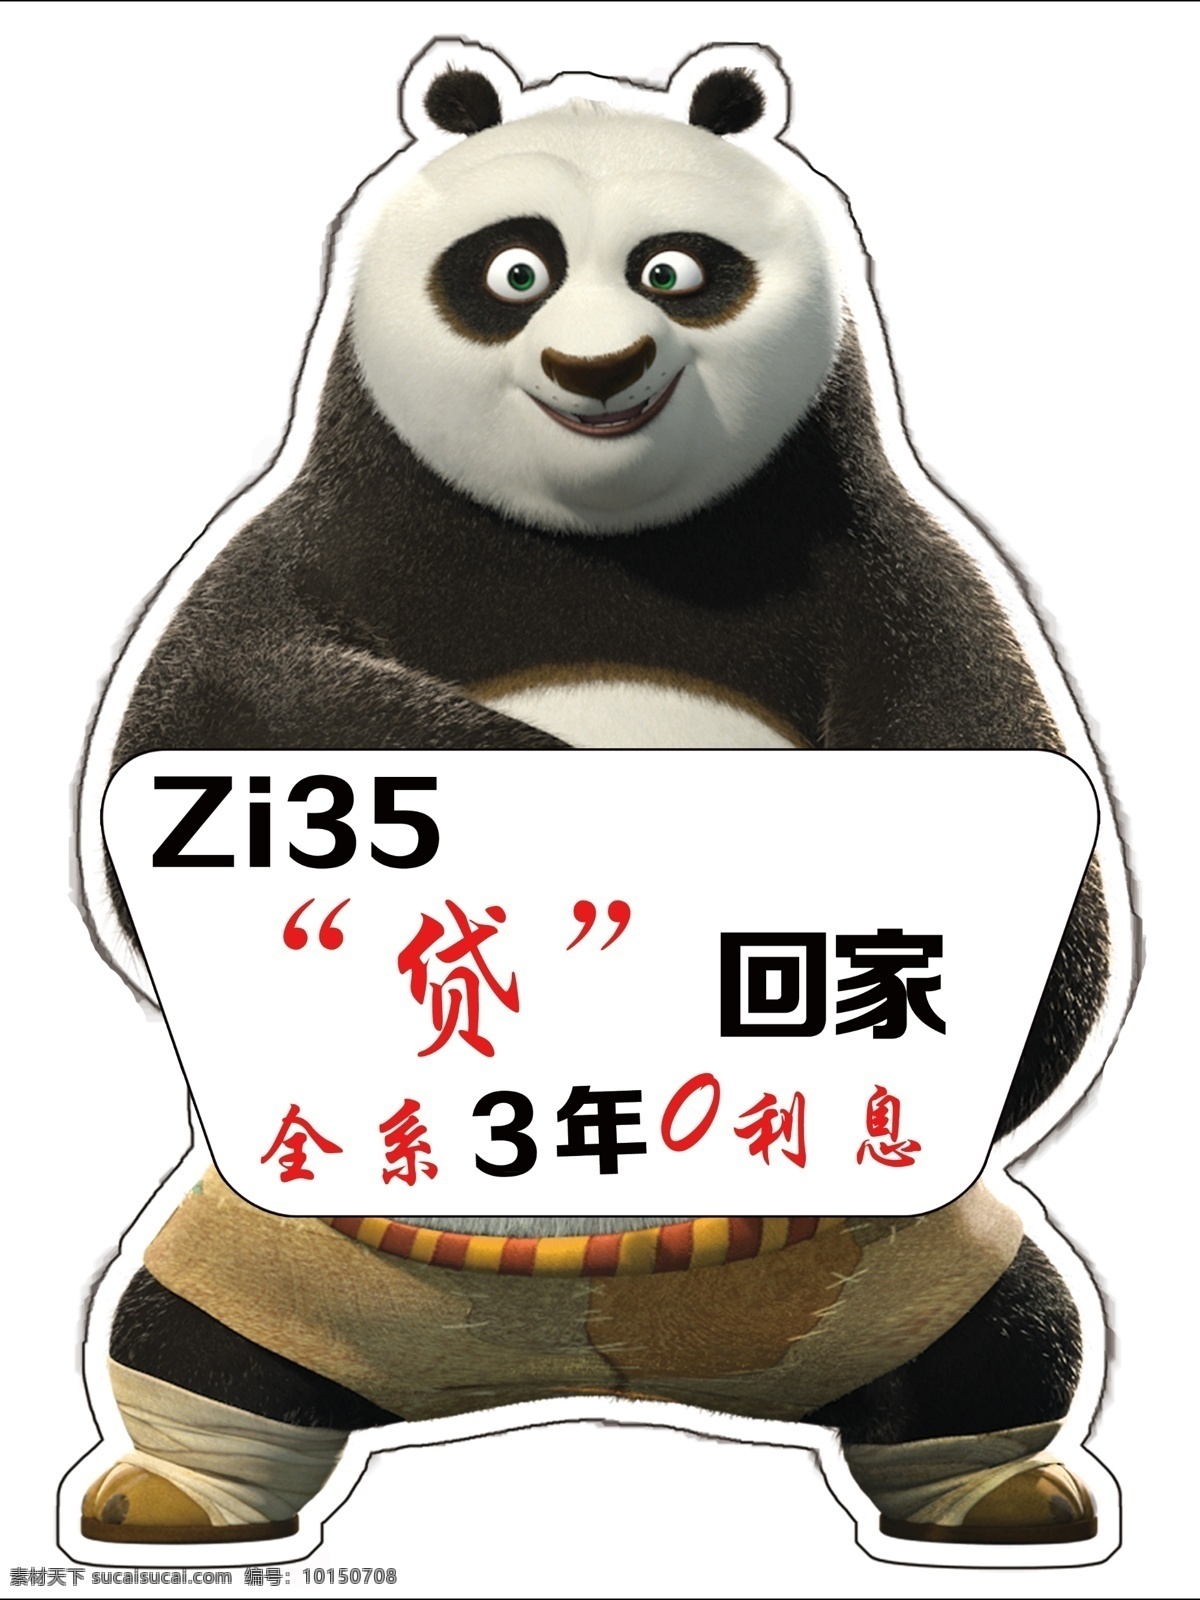 功夫 熊猫 站牌 功夫熊猫 熊猫站牌 汽车站牌 原创设计 原创展板